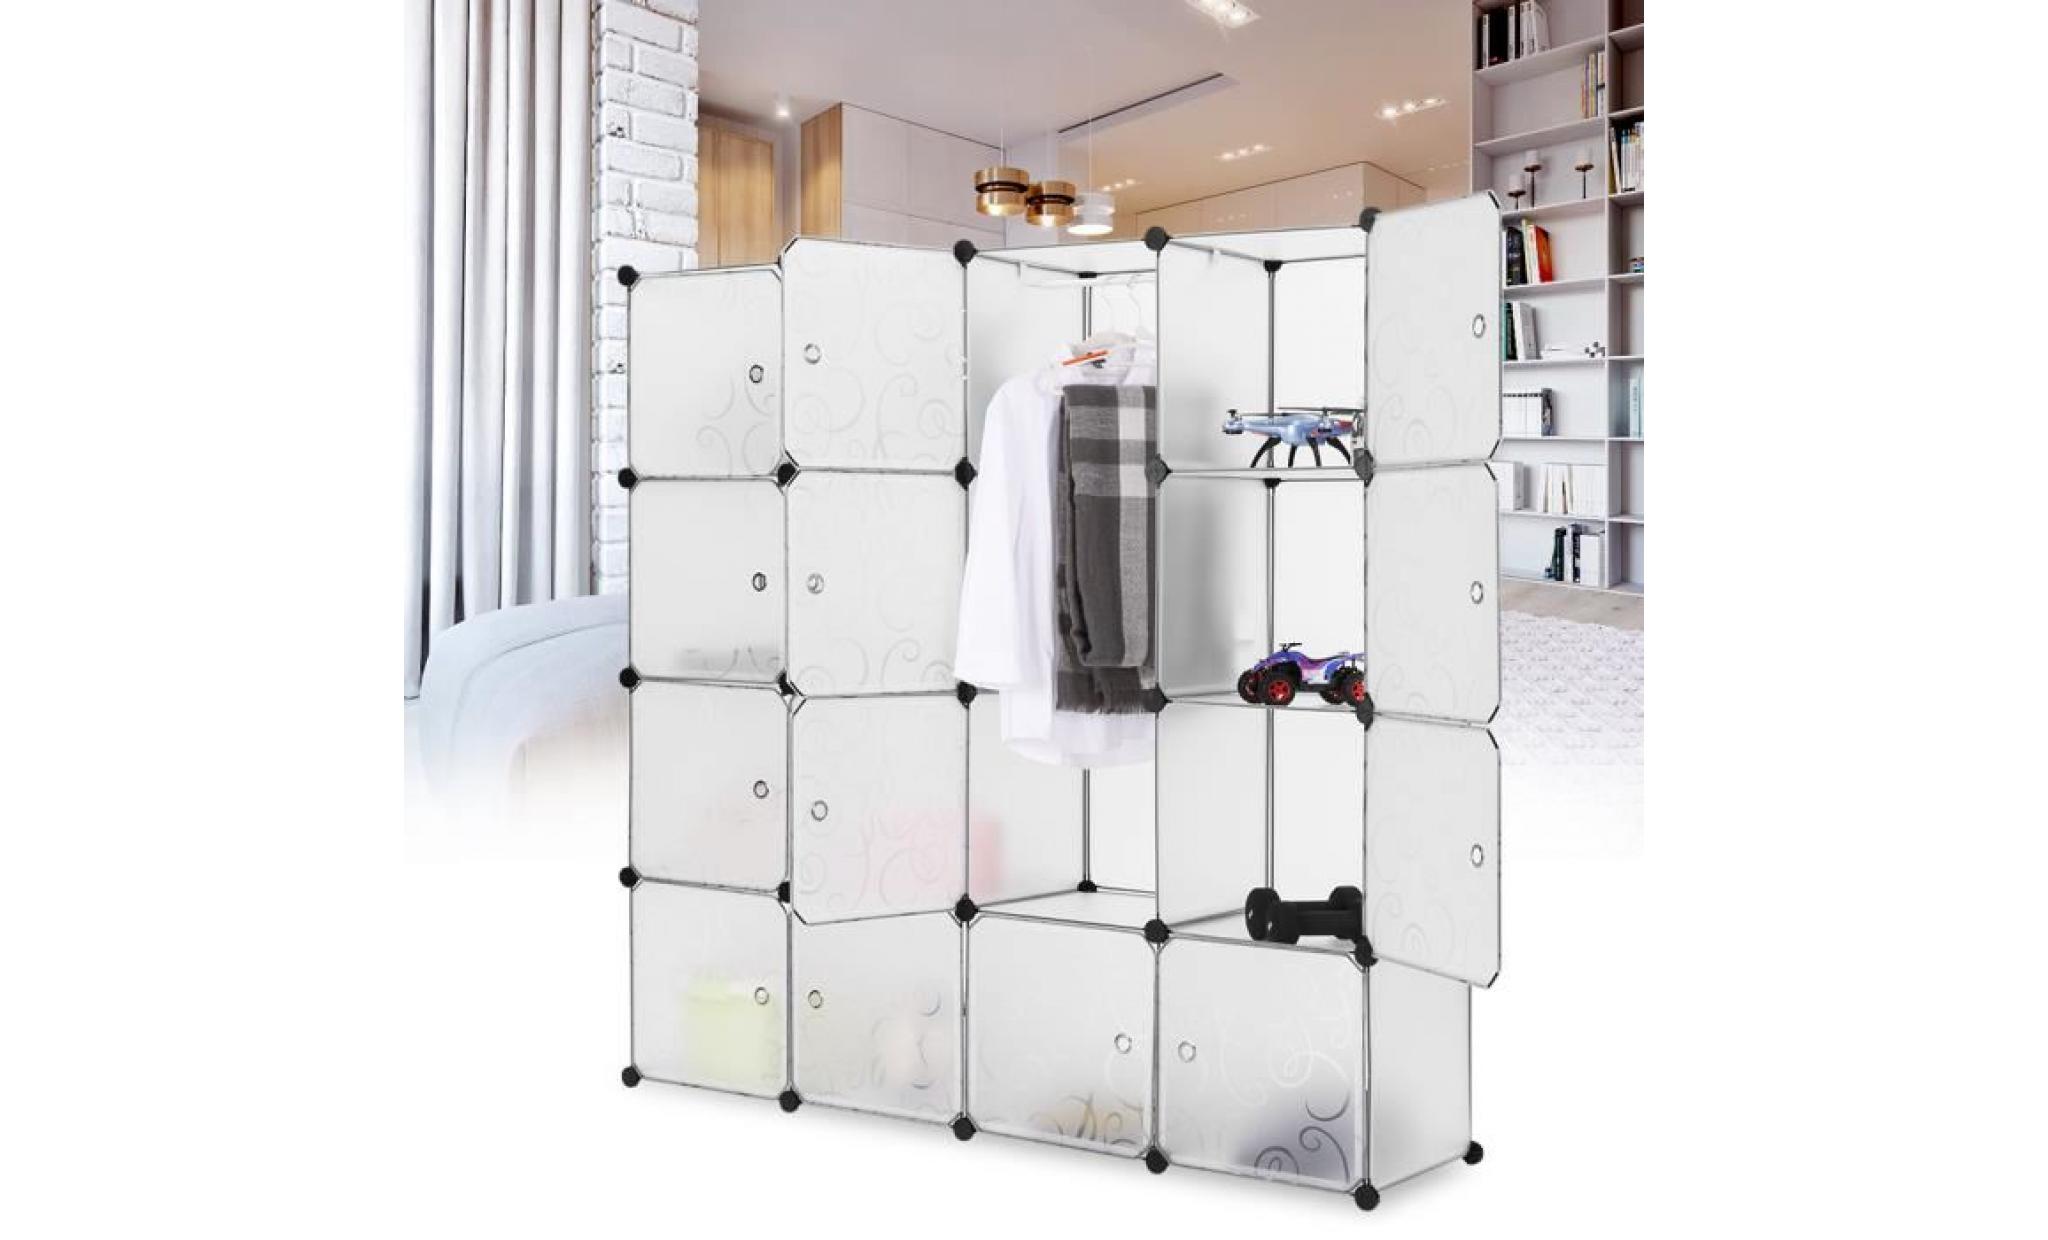 langria 16 cube interverrouillage modulaire organisateur système placard armoire rack avec portes，translucide blanc pas cher